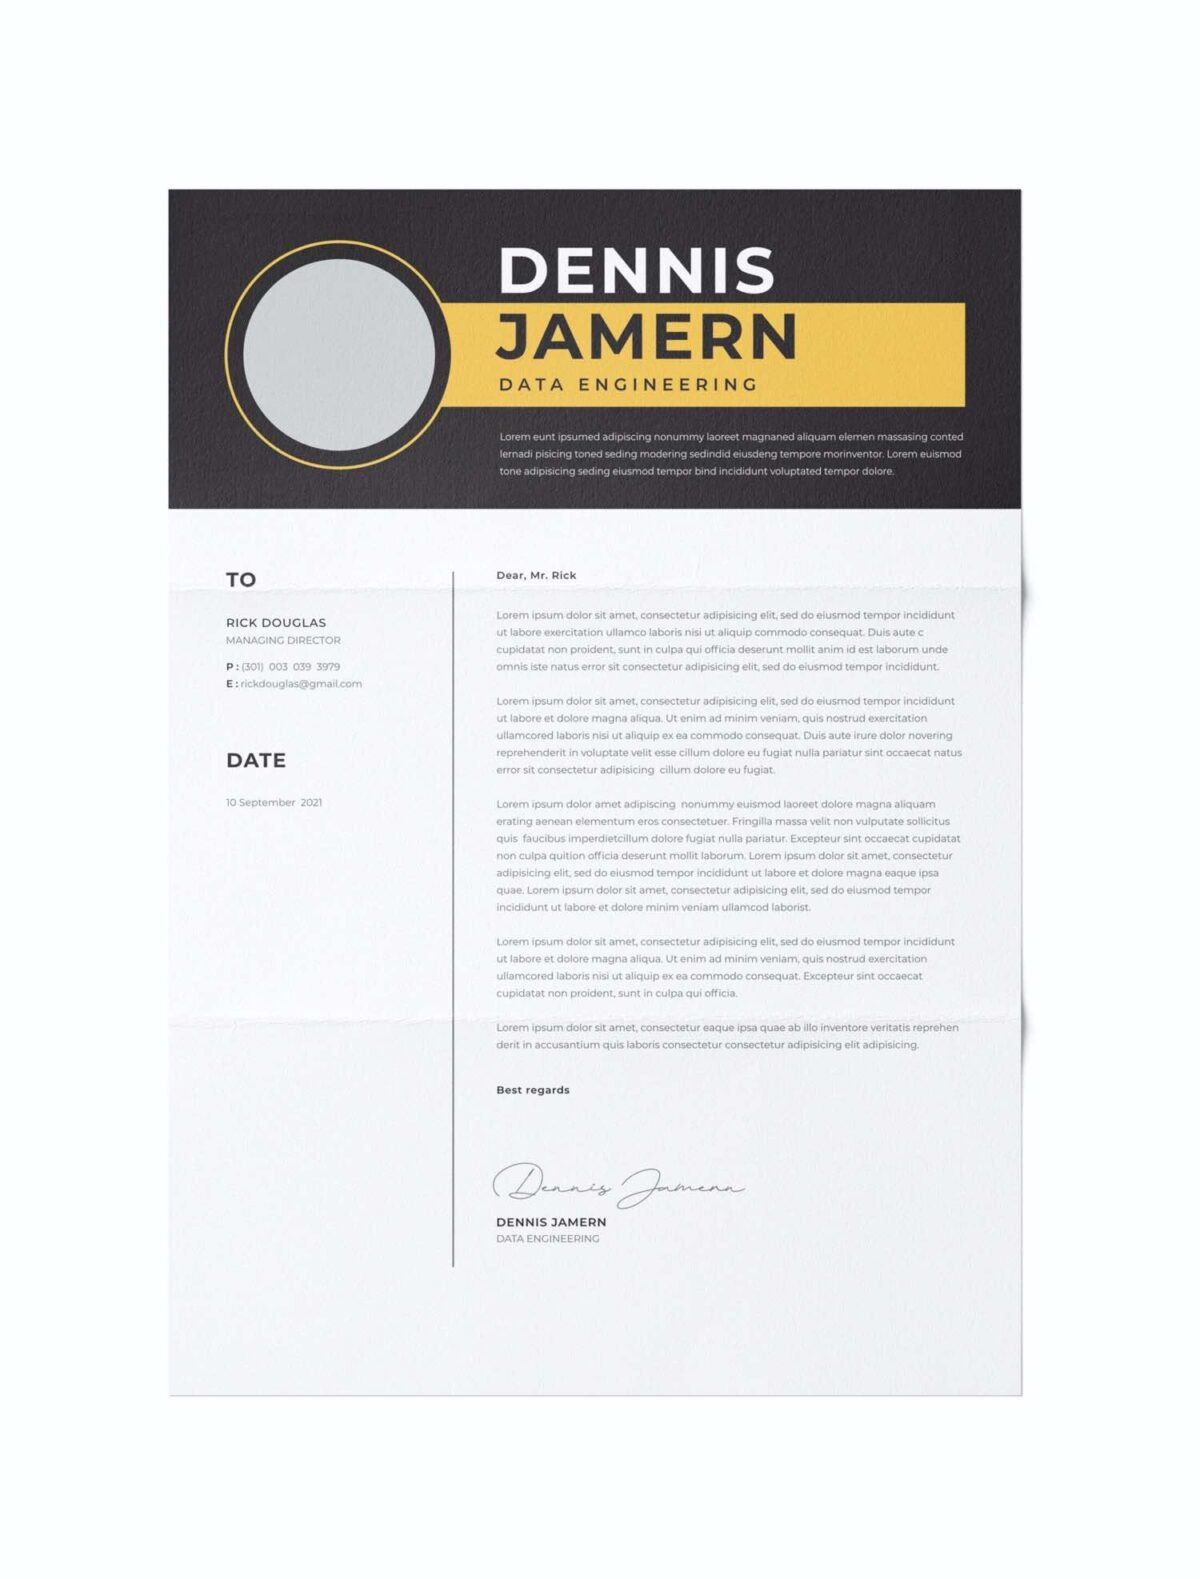 CV #32 Dennis Jamern (sport)